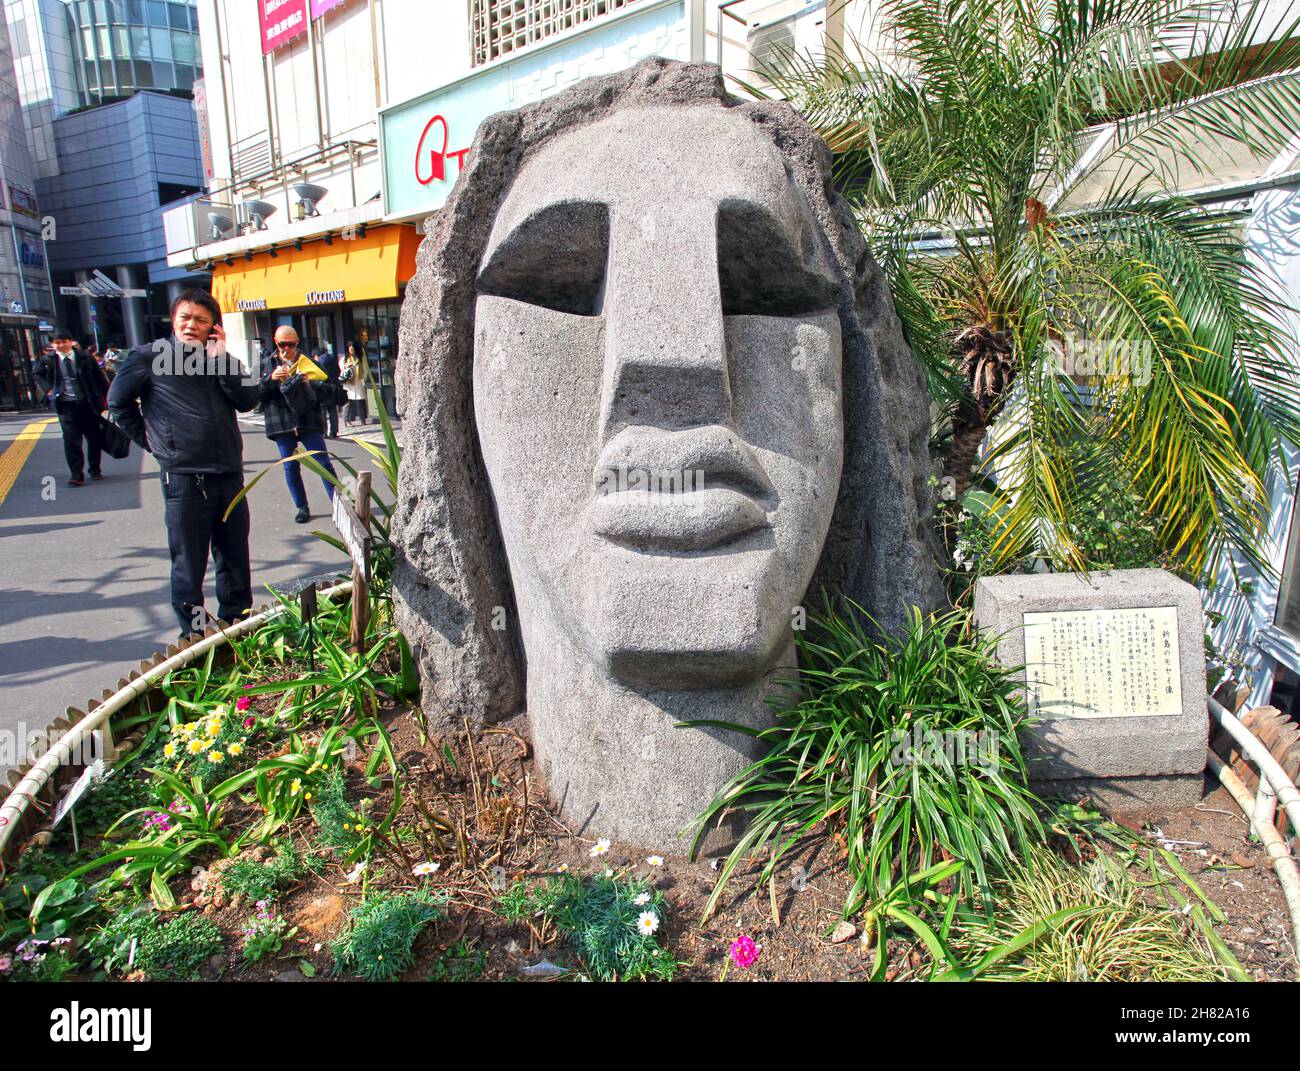 La statua di Moyai a Shibuya vicino alla stazione ferroviaria JR, donata dalla gente dell'isola di Niijima delle isole Izu. Foto Stock